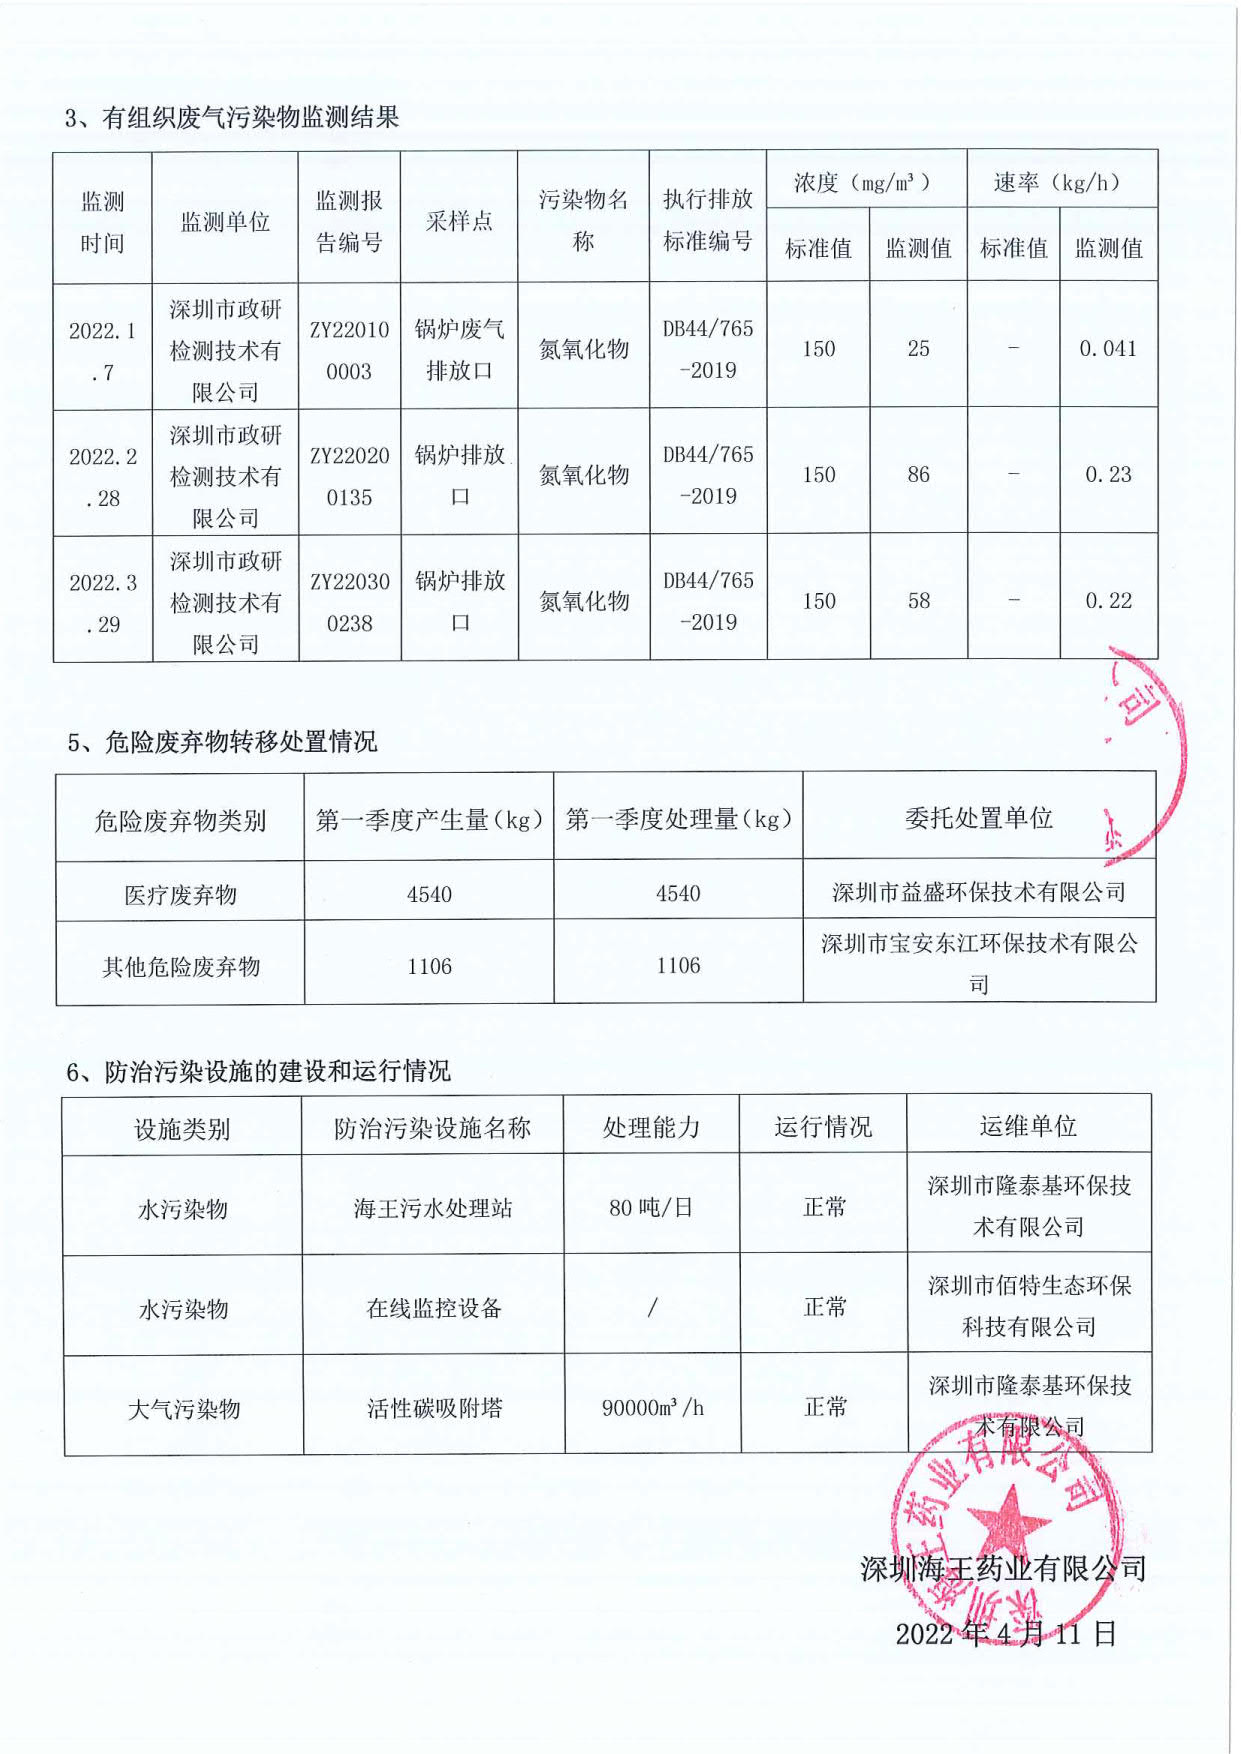 深圳海王药业有限公司2022年第一季度环境信息公示_2.jpg